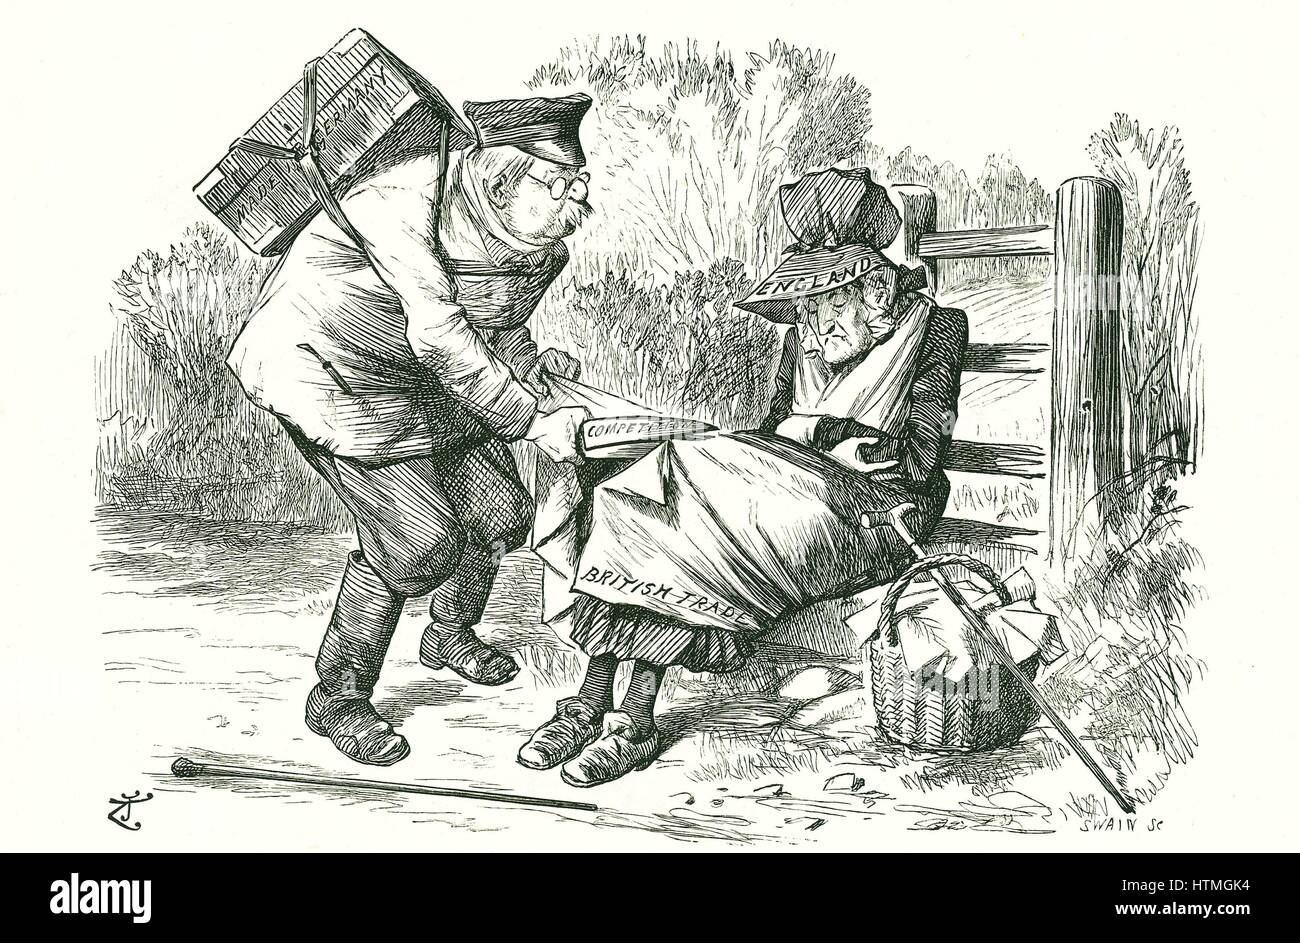 Alemania robando Bretaña su posición como líder mundial en el comercio y la manufactura. Cartoon por John Tenniel de "Punch", 5 de septiembre de 1896. Foto de stock